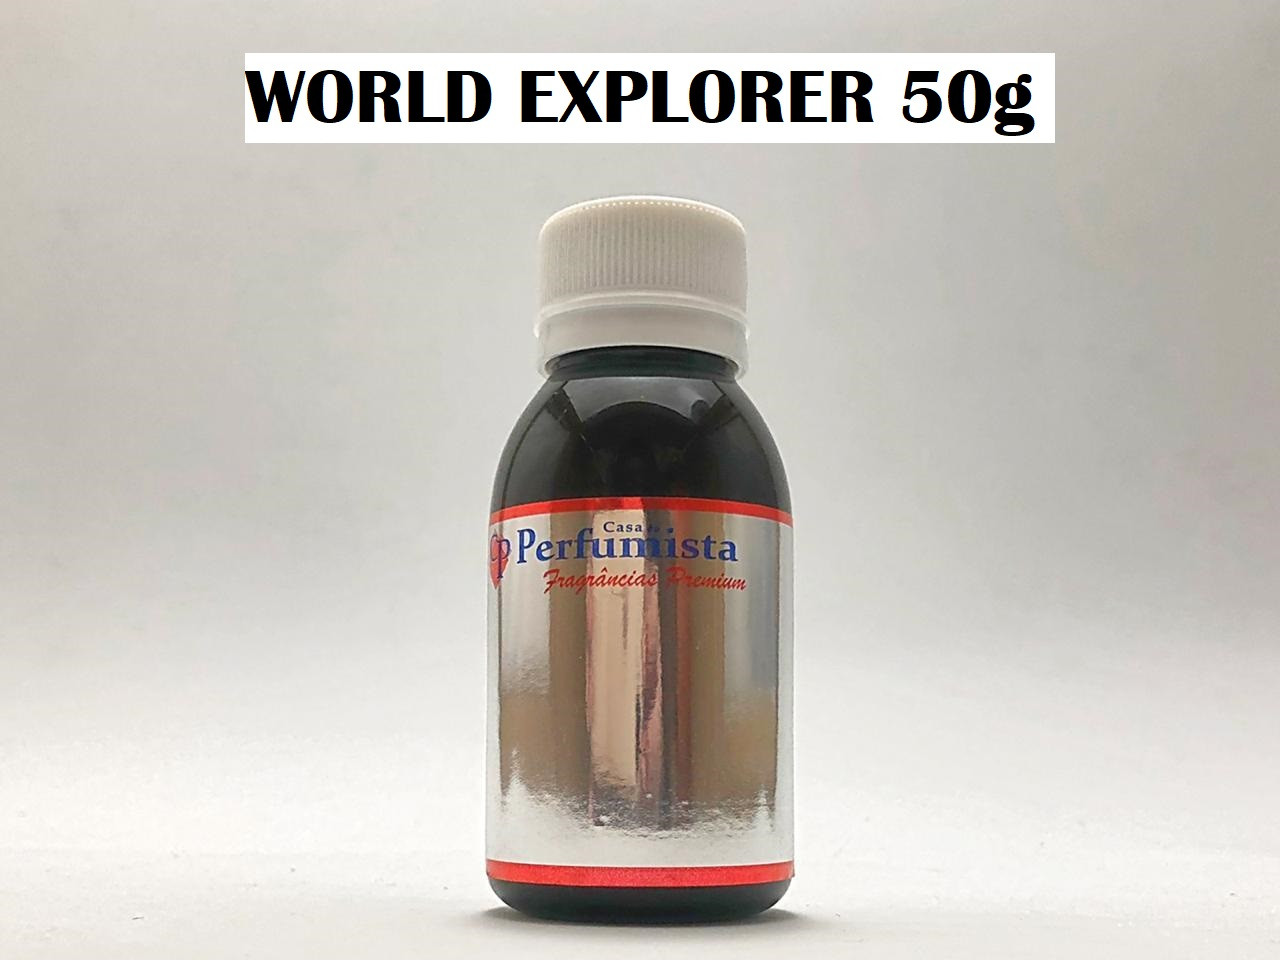 WORLD EXPLORER 50g - Inspiração: Explorer Montblanc Masculino 